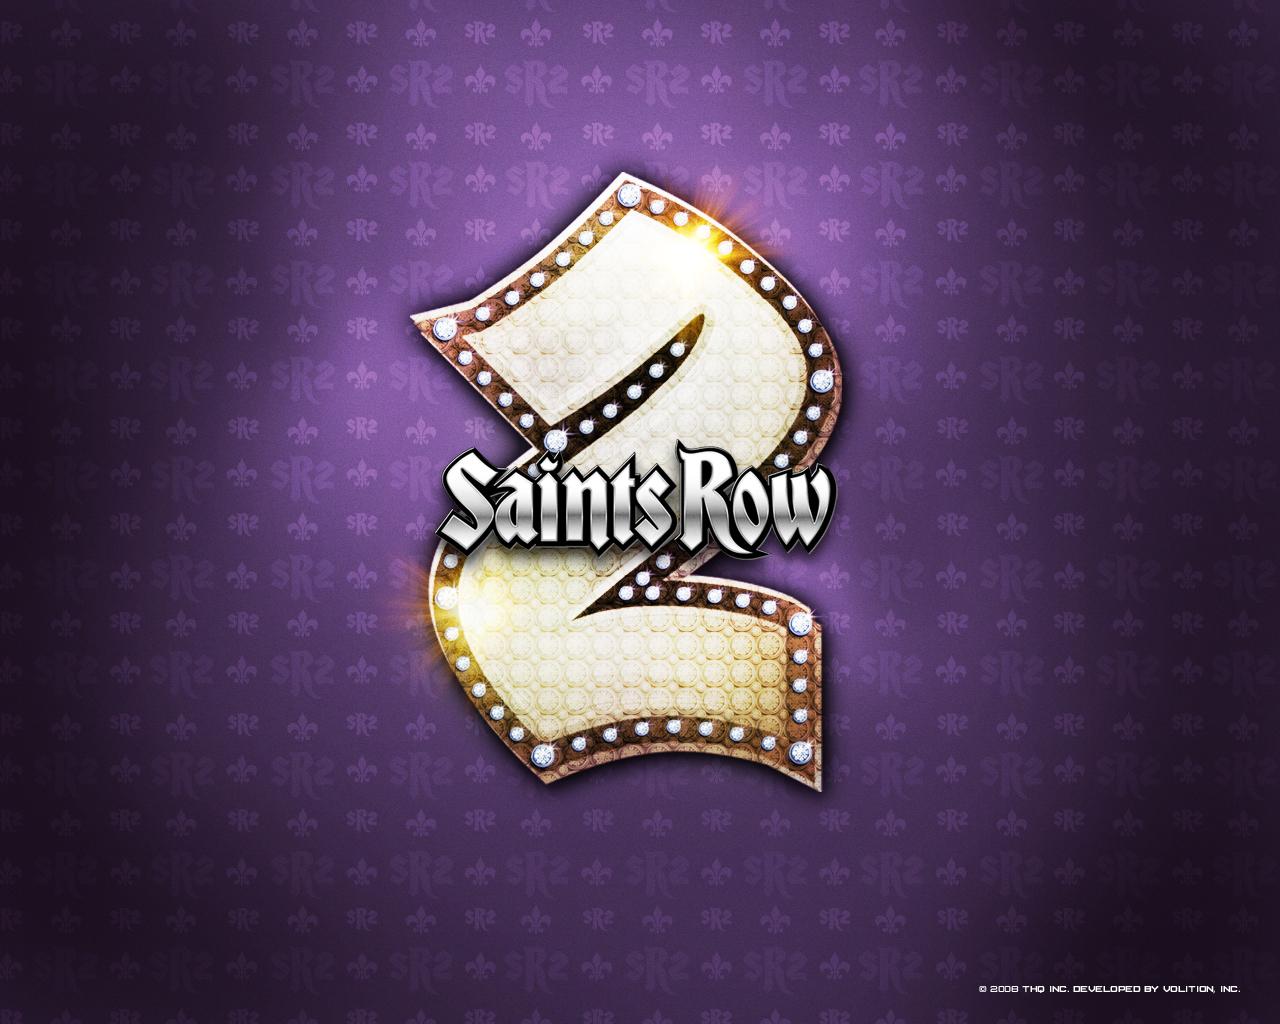 Saints Row Wallpaper Games